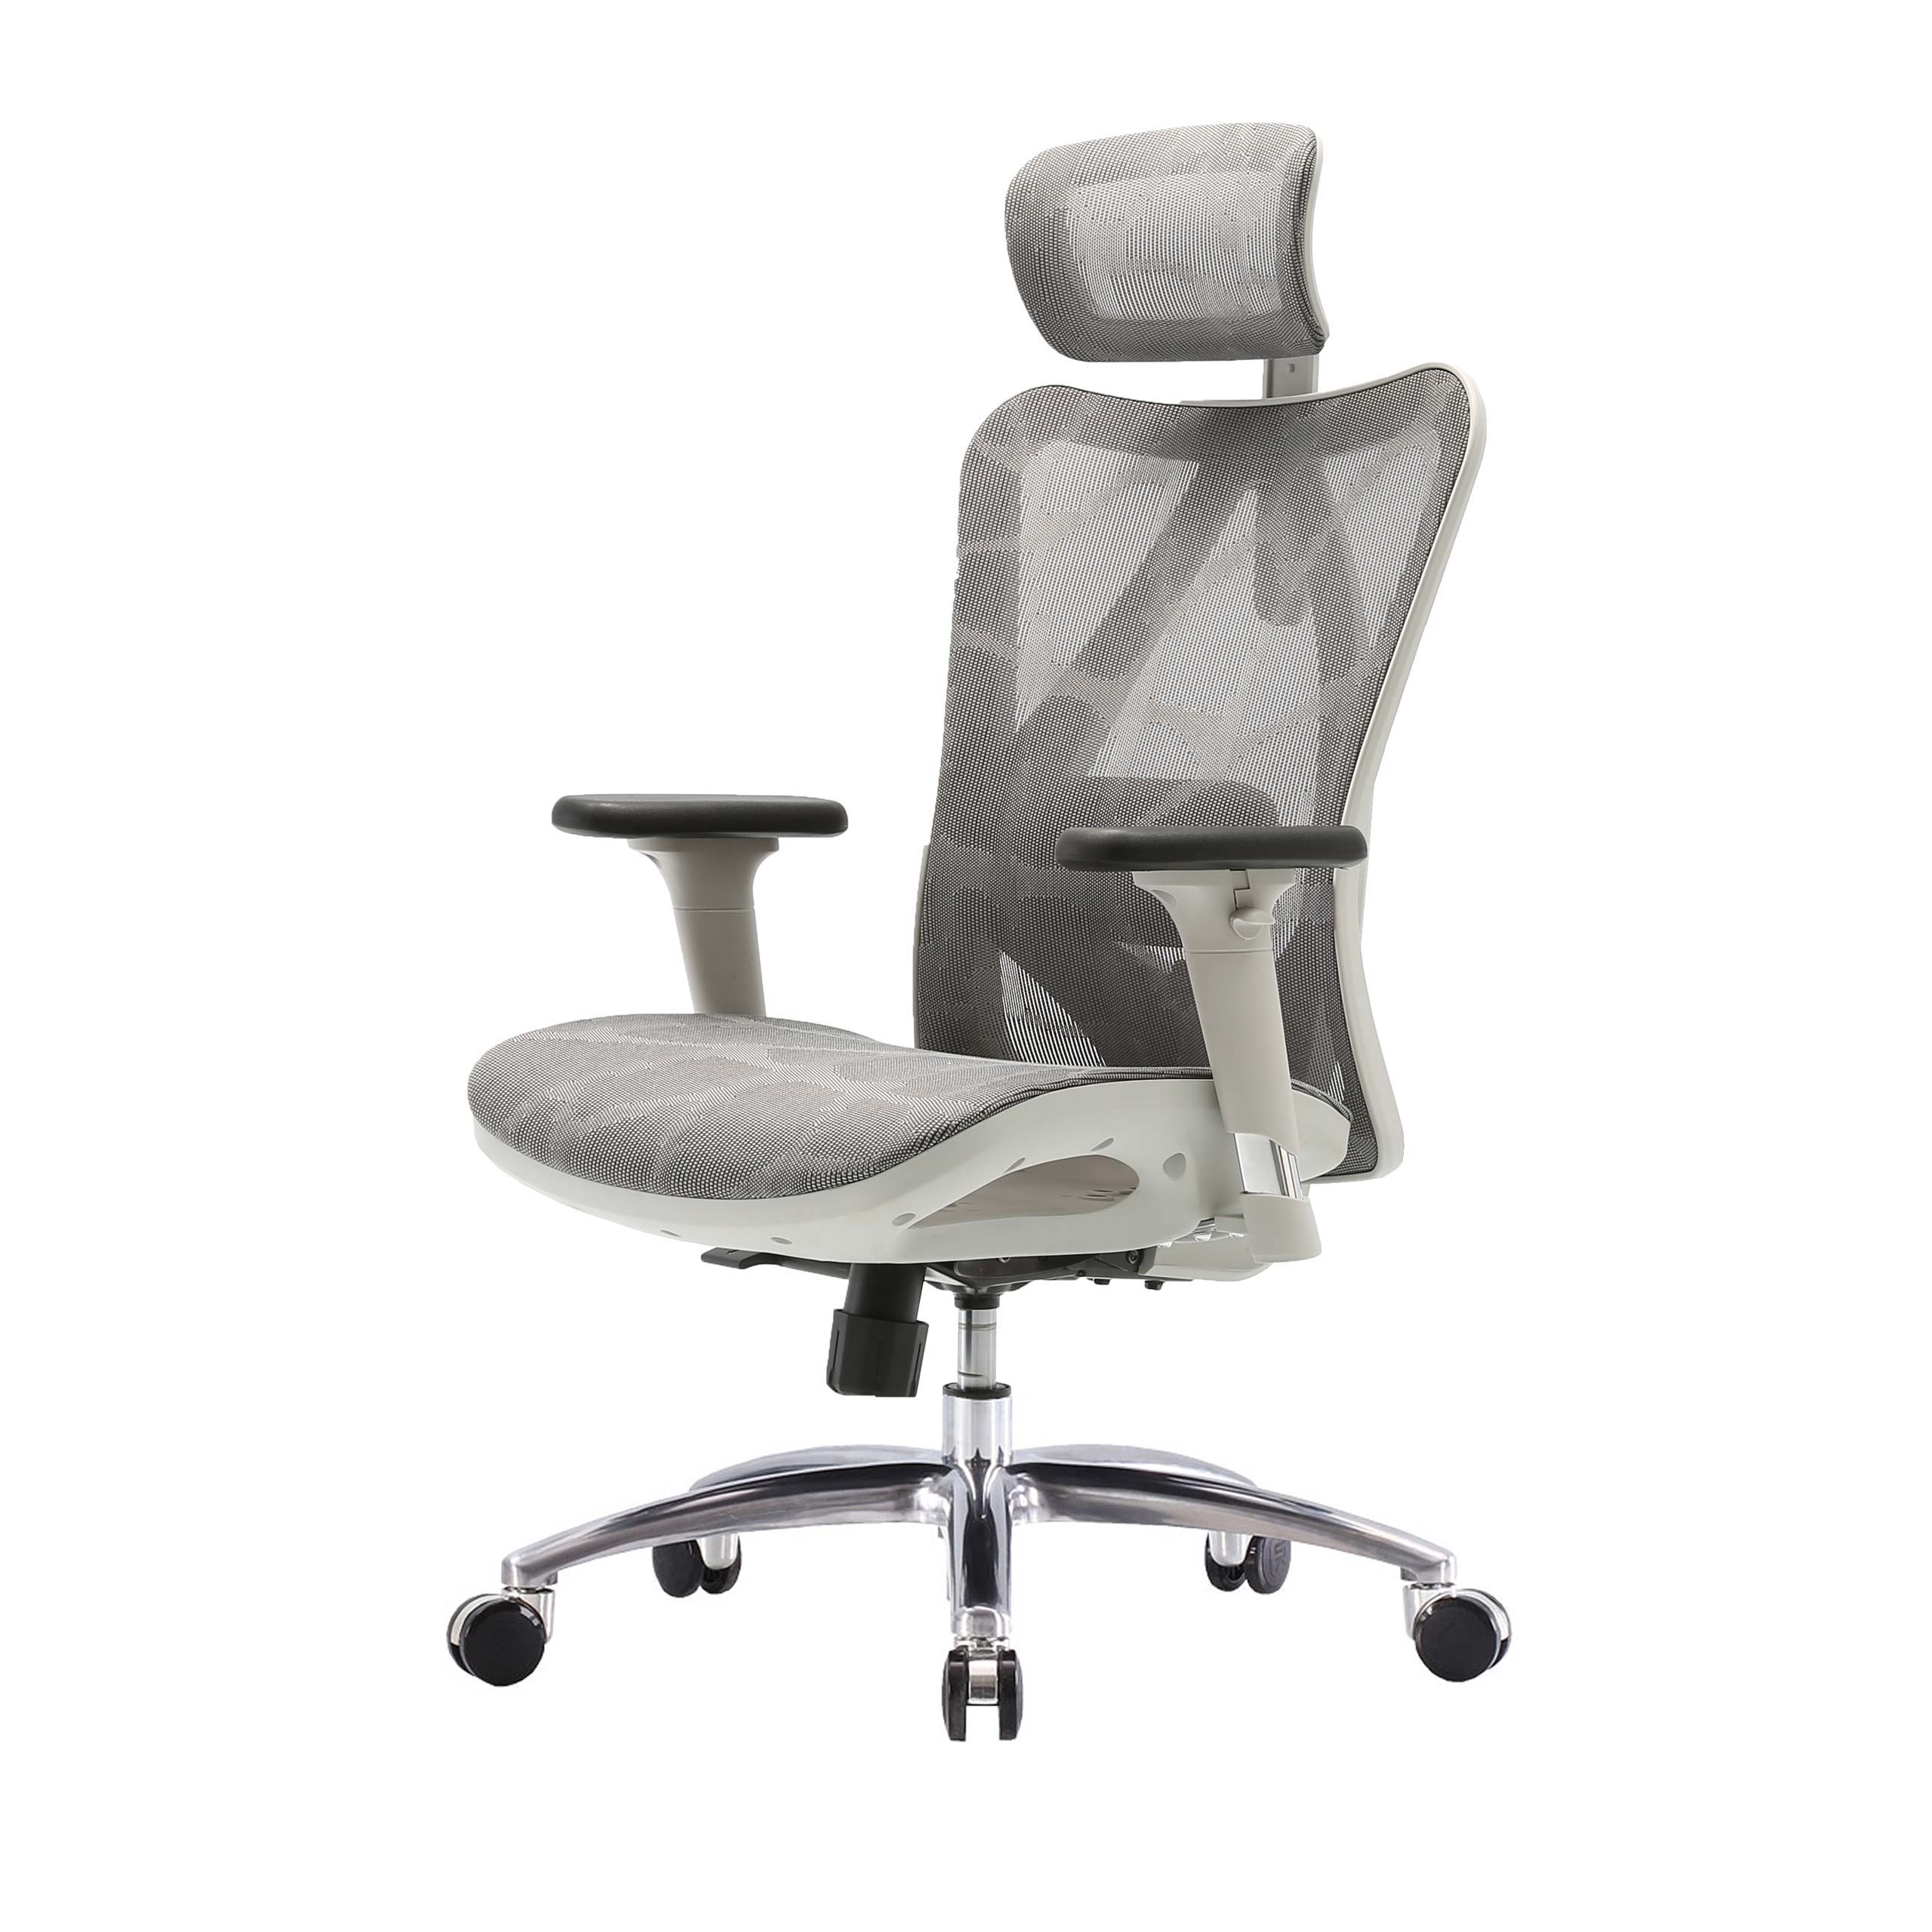 SIHOO poltrona ufficio ergonomica braccioli regolabili 150kg tessuto bianco  e grigio